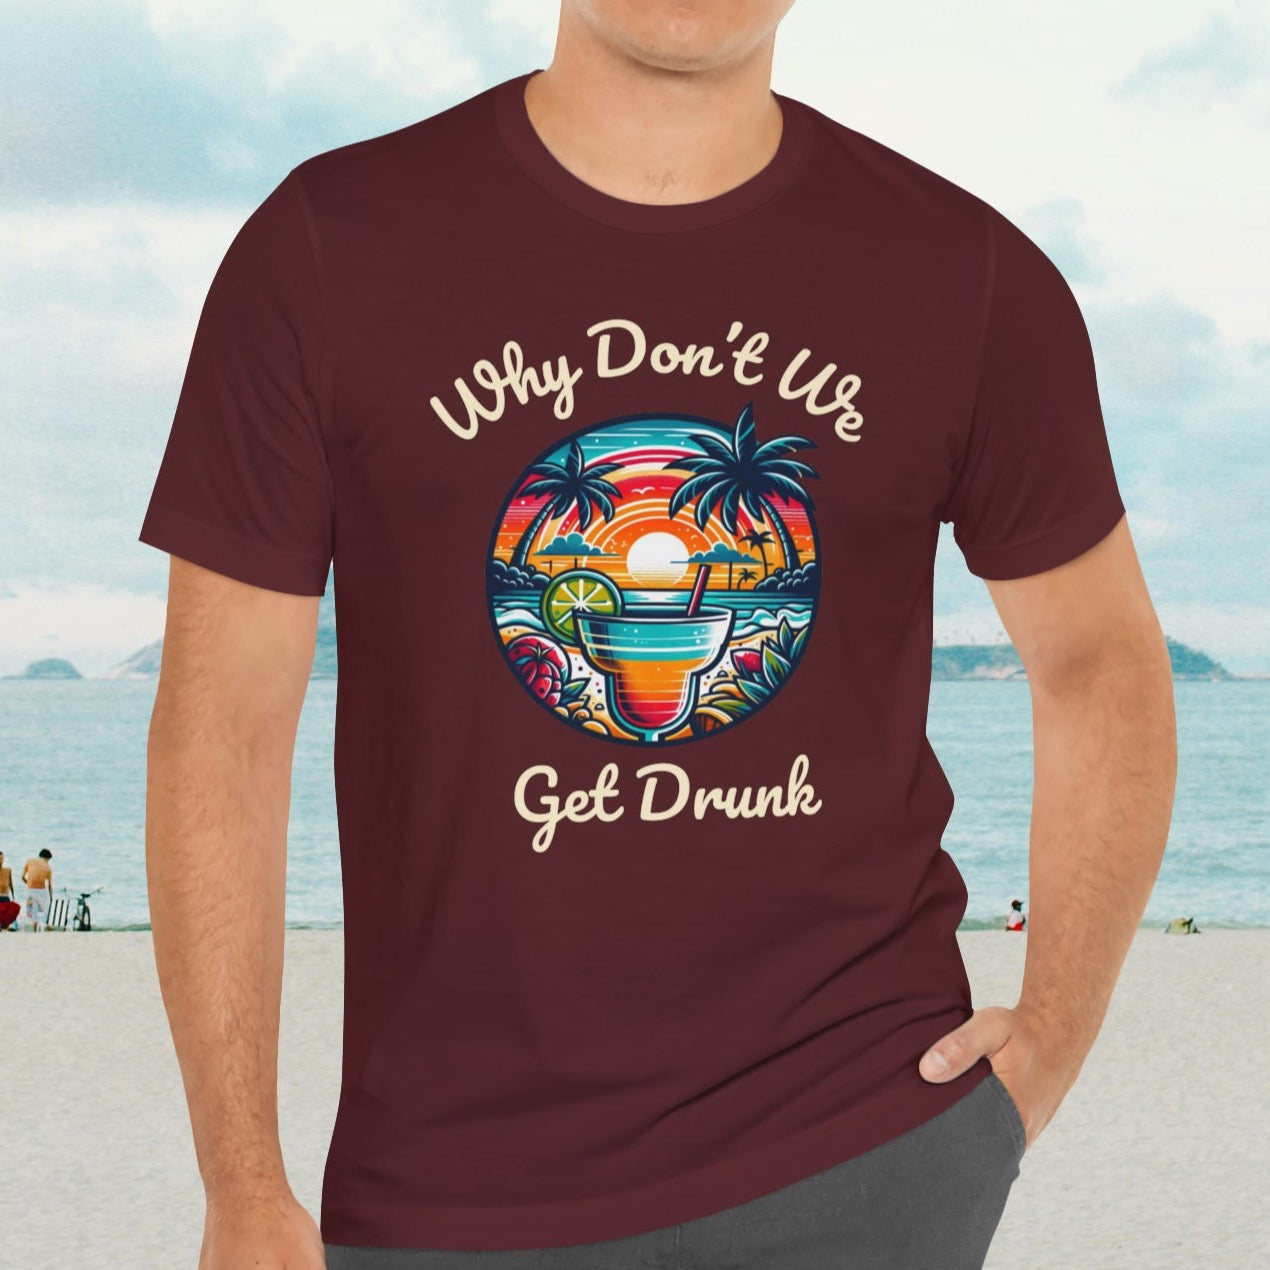 "Get Drunk" Men's Tropical t- shirt